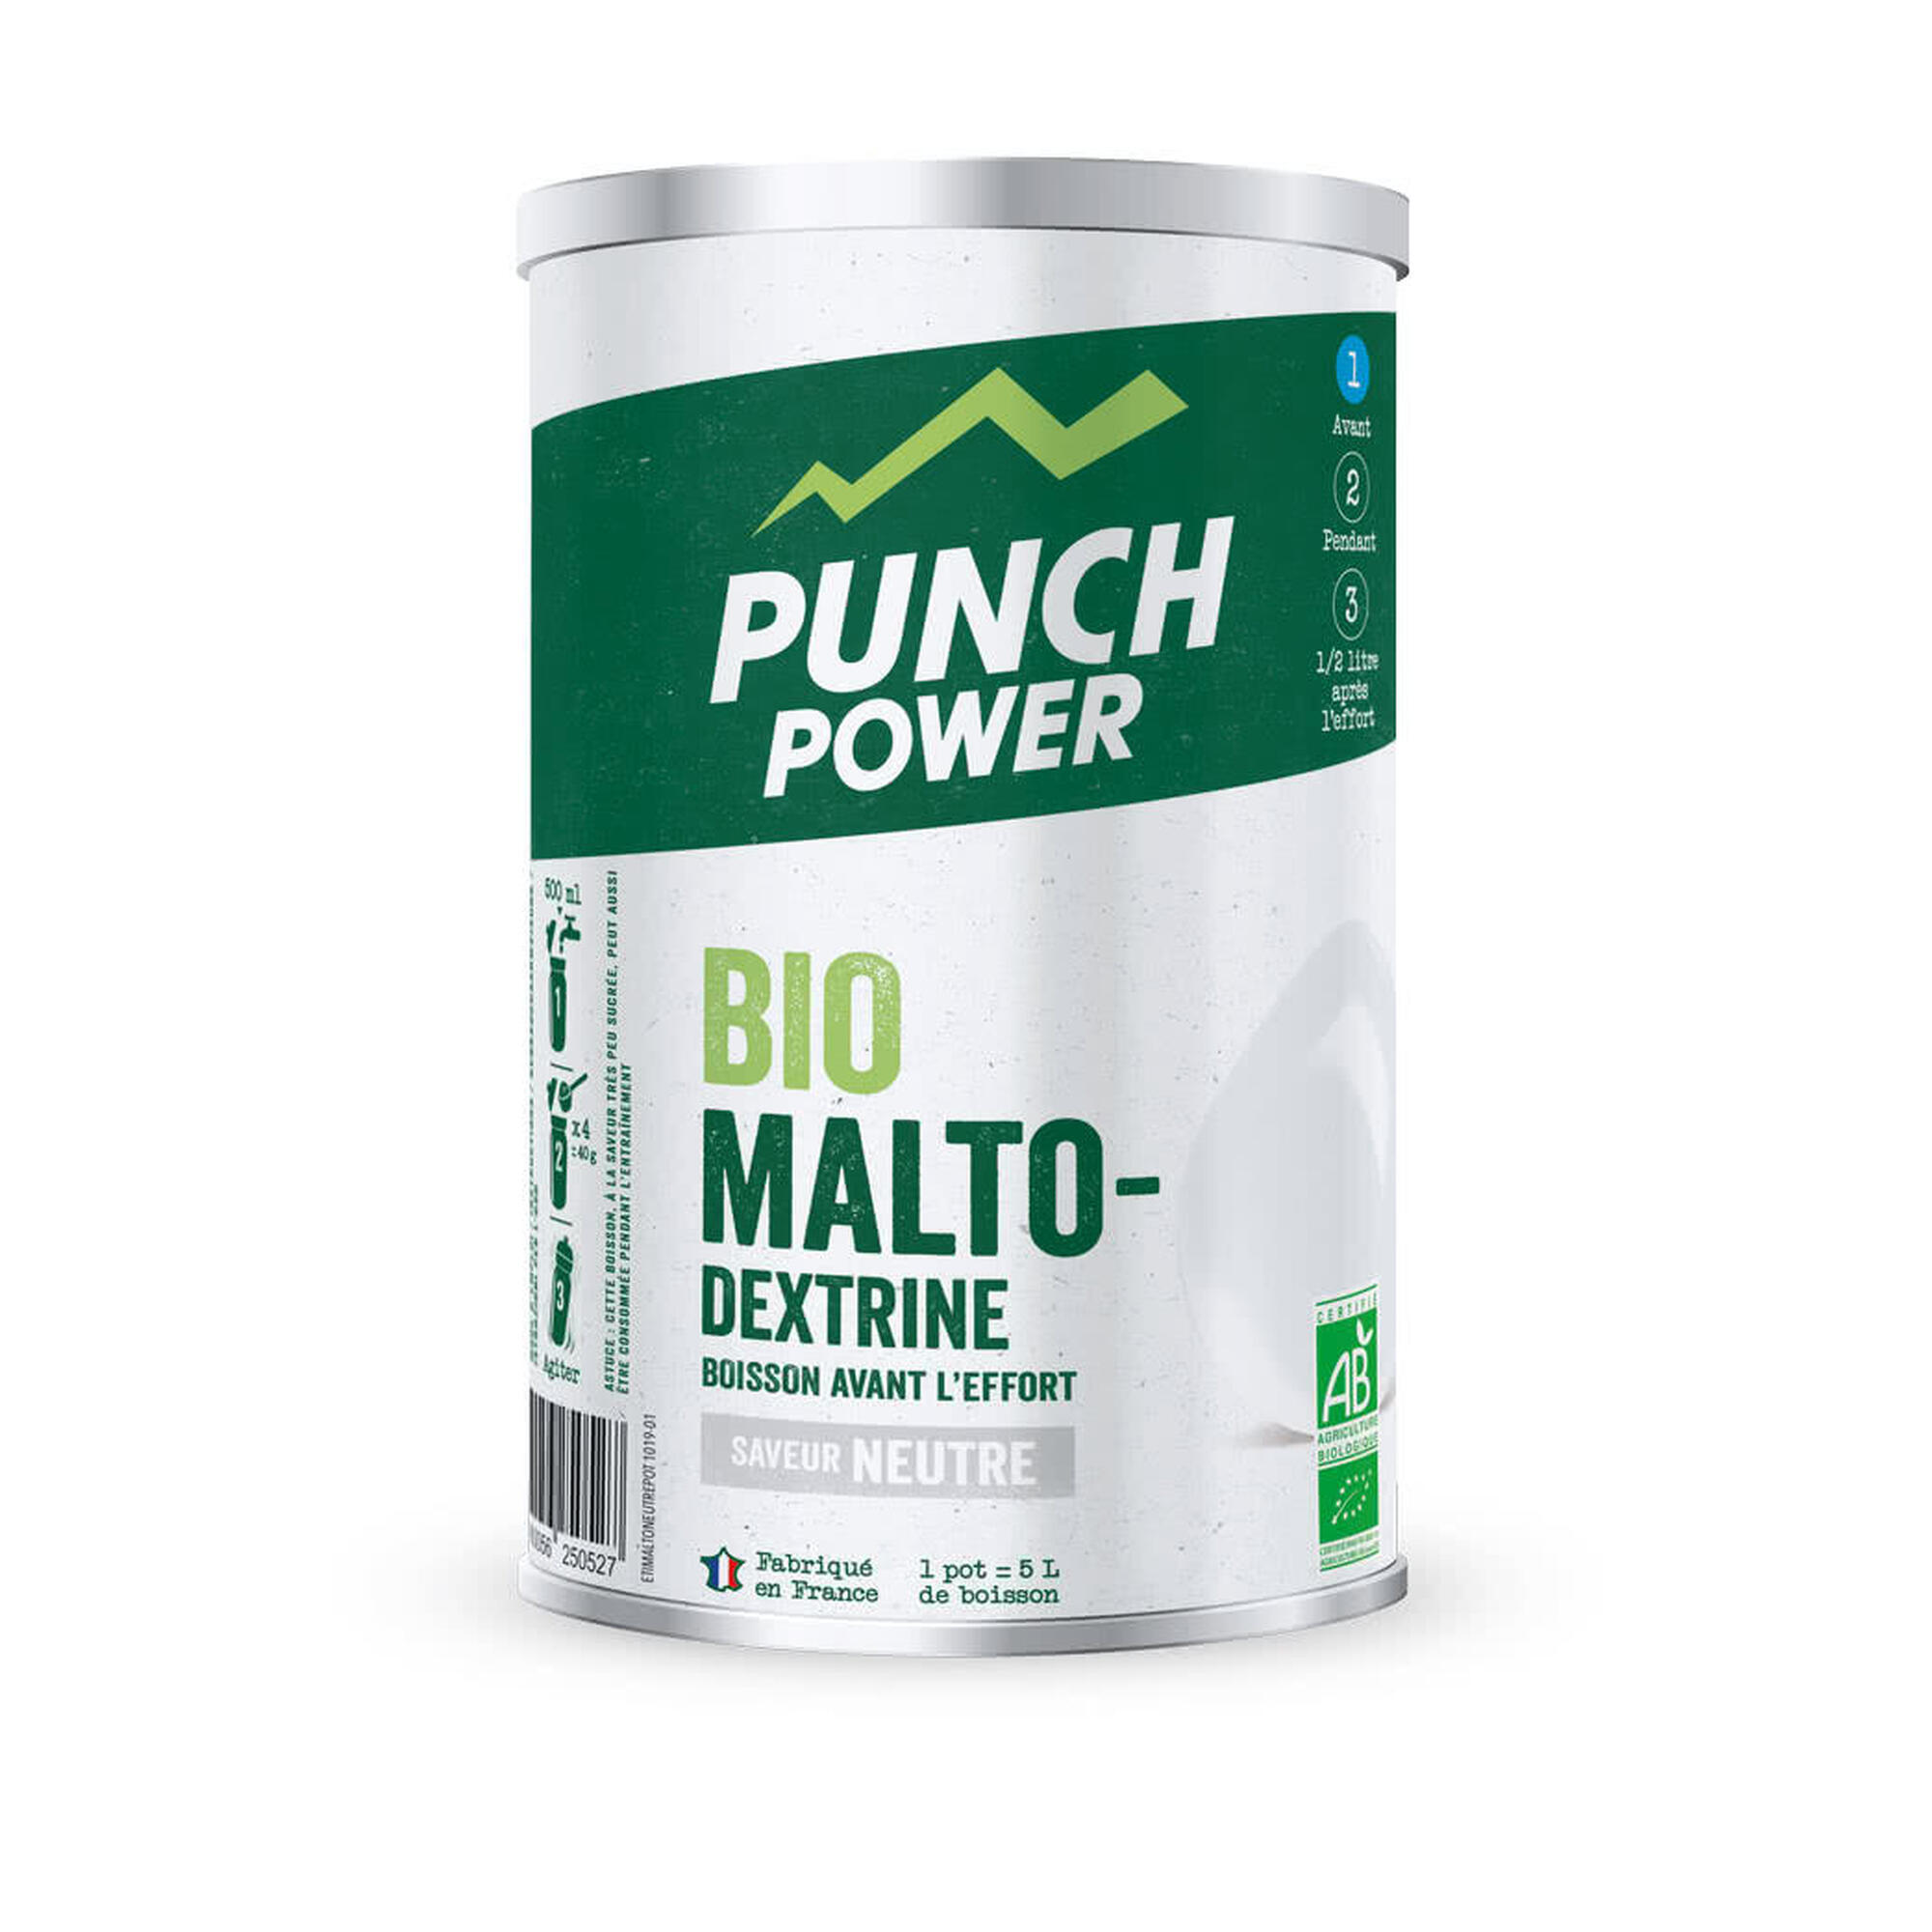 Punch Power Biomaltodextrine 500 g - Neutre